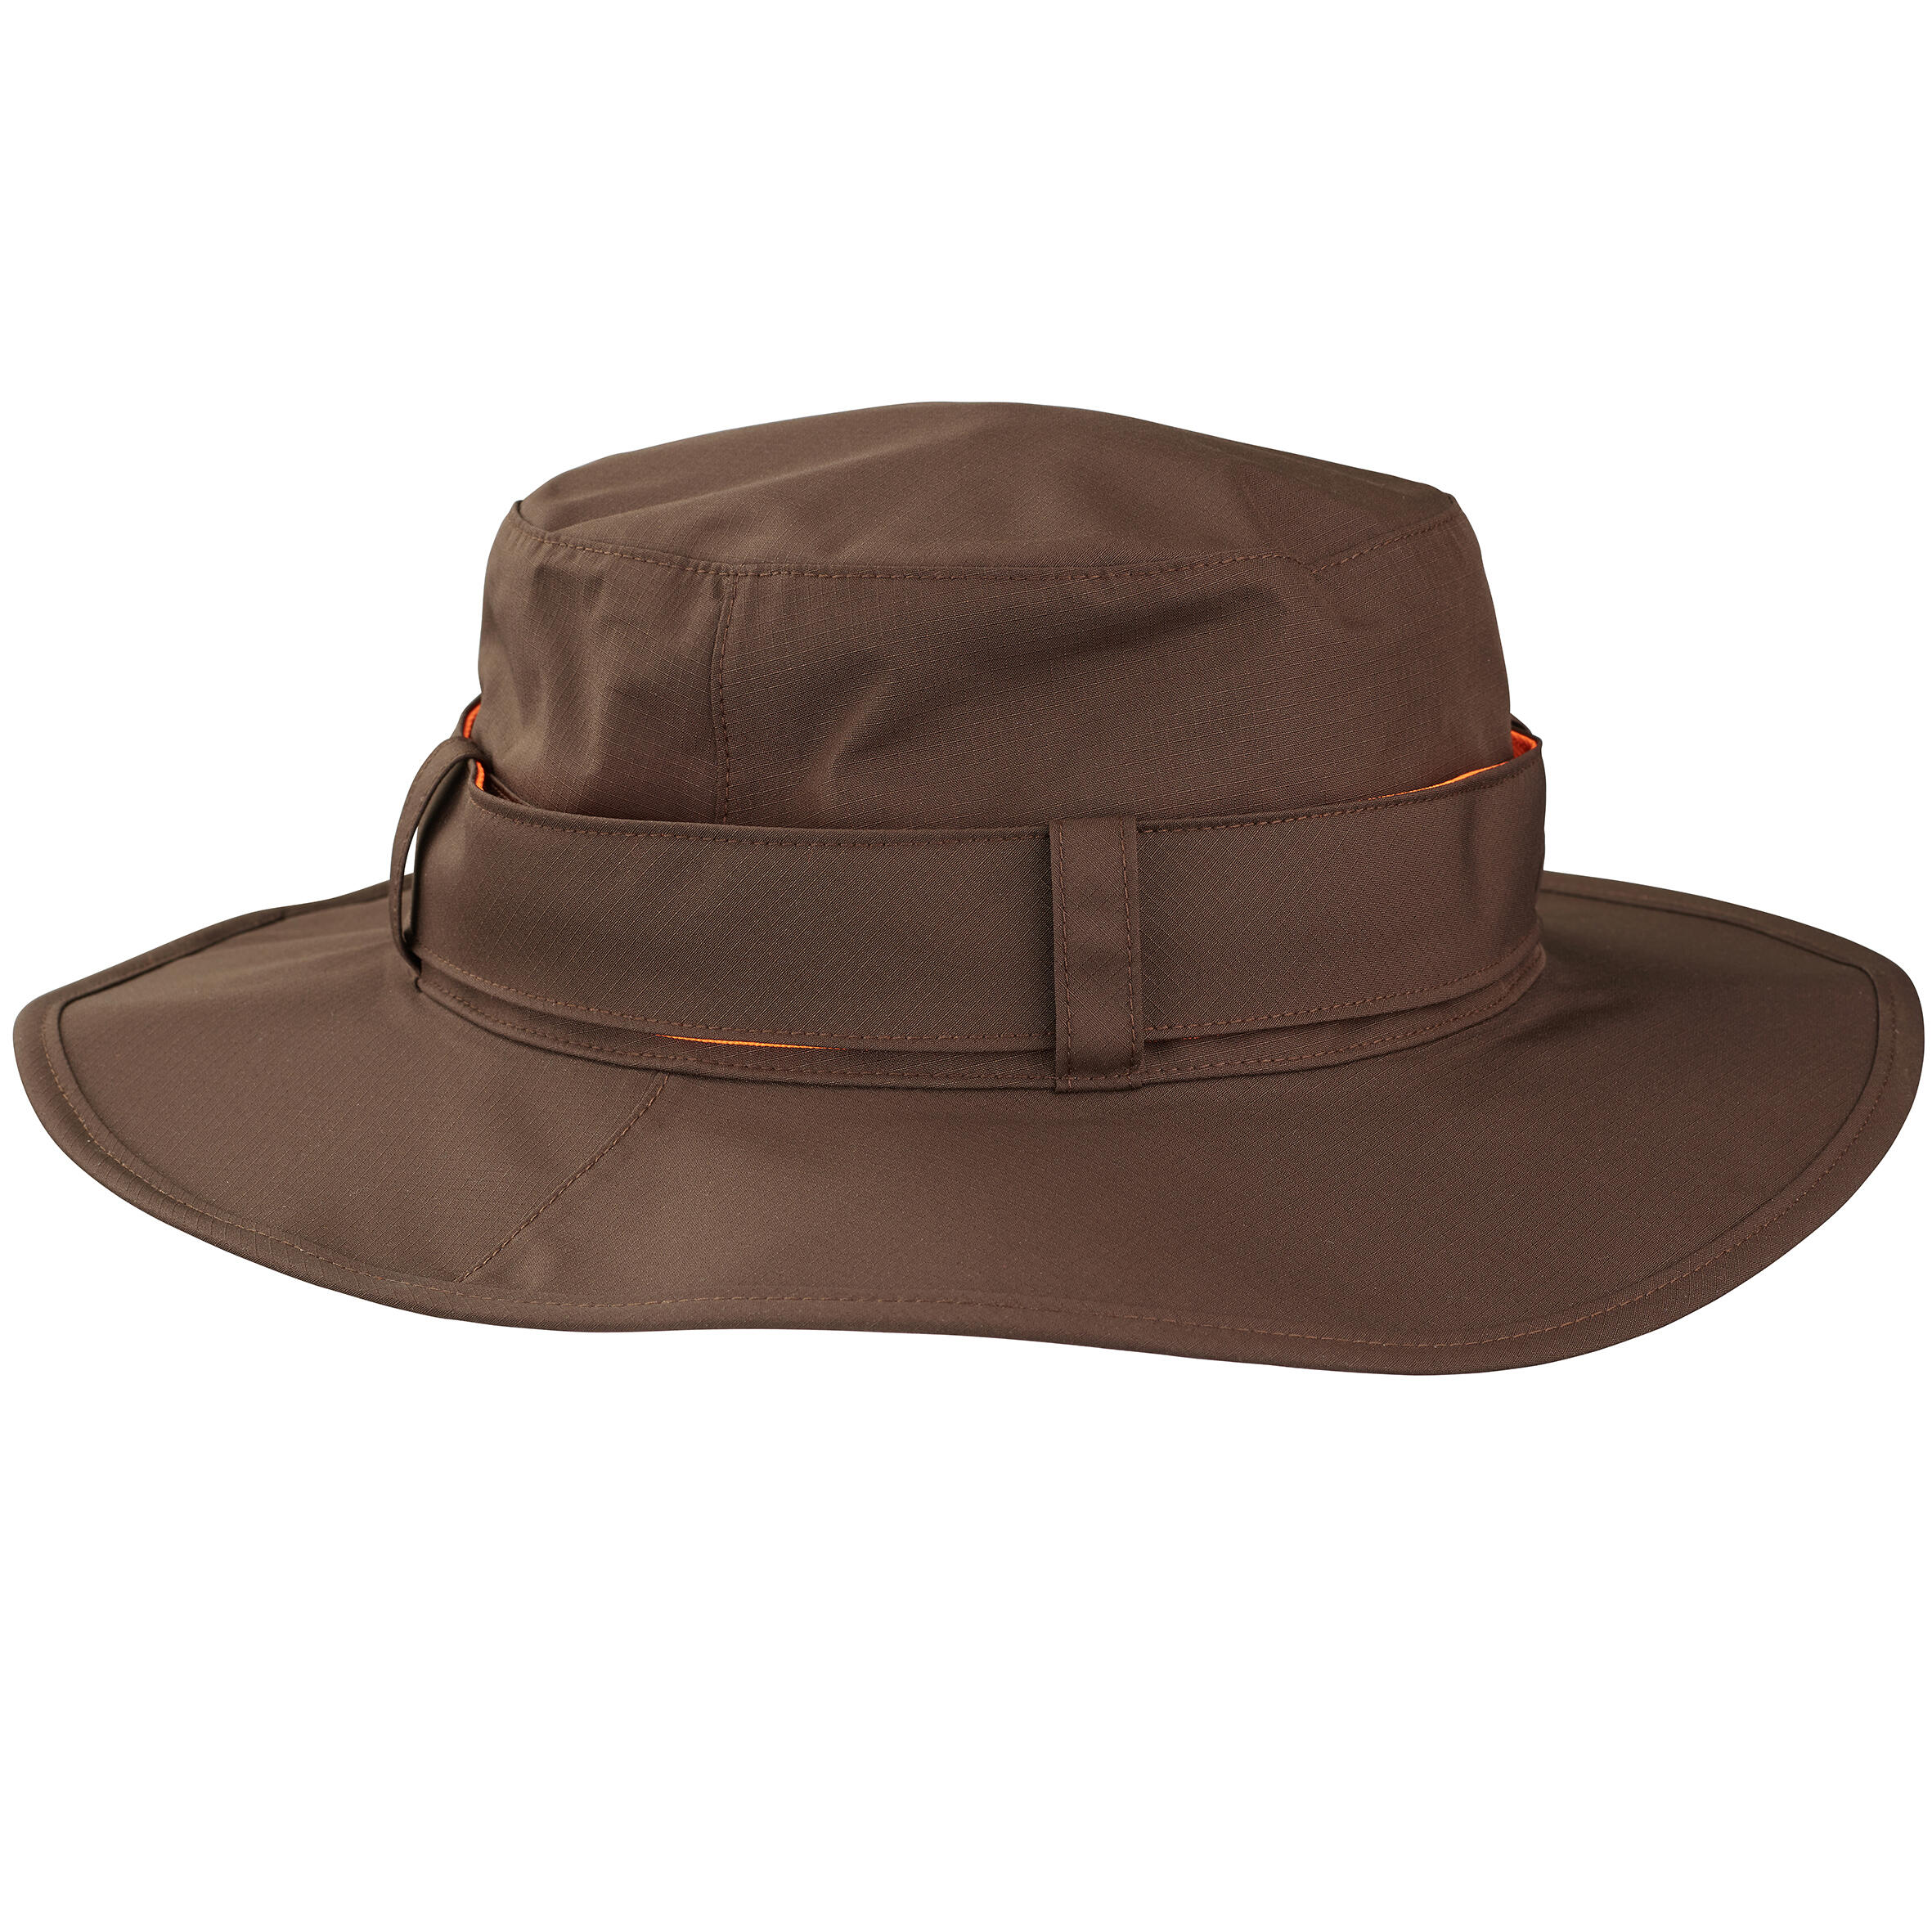 Pălărie 520 impermeabilă și rezistentă Bărbați decathlon.ro  Imbracaminte Natura